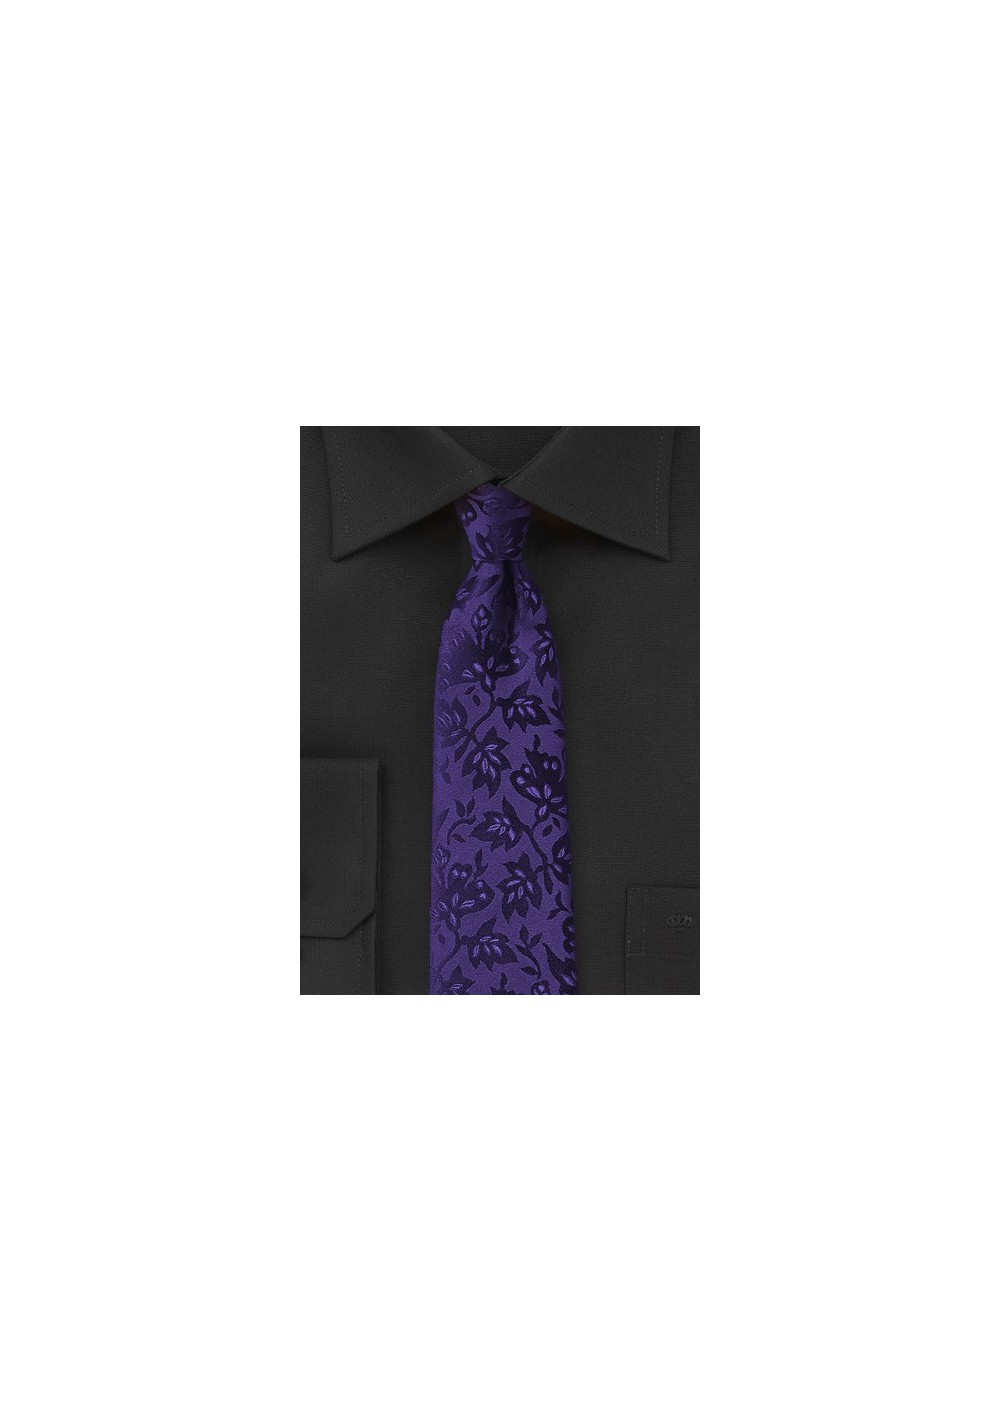 Trendy Floral Tie in Violet